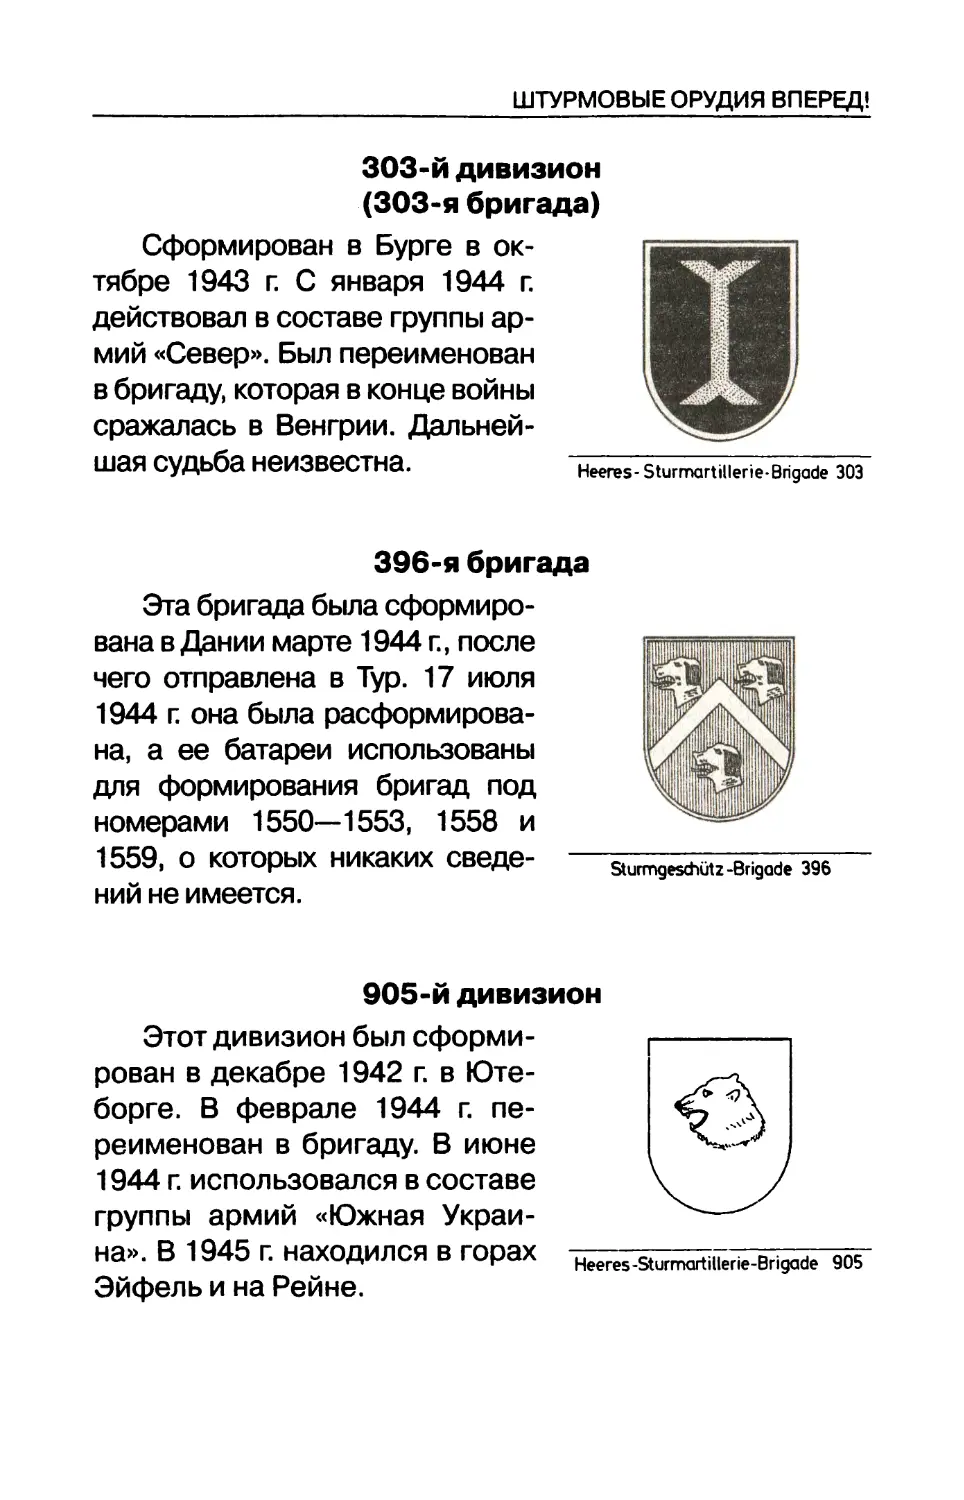 396-я бригада
905-й дивизион